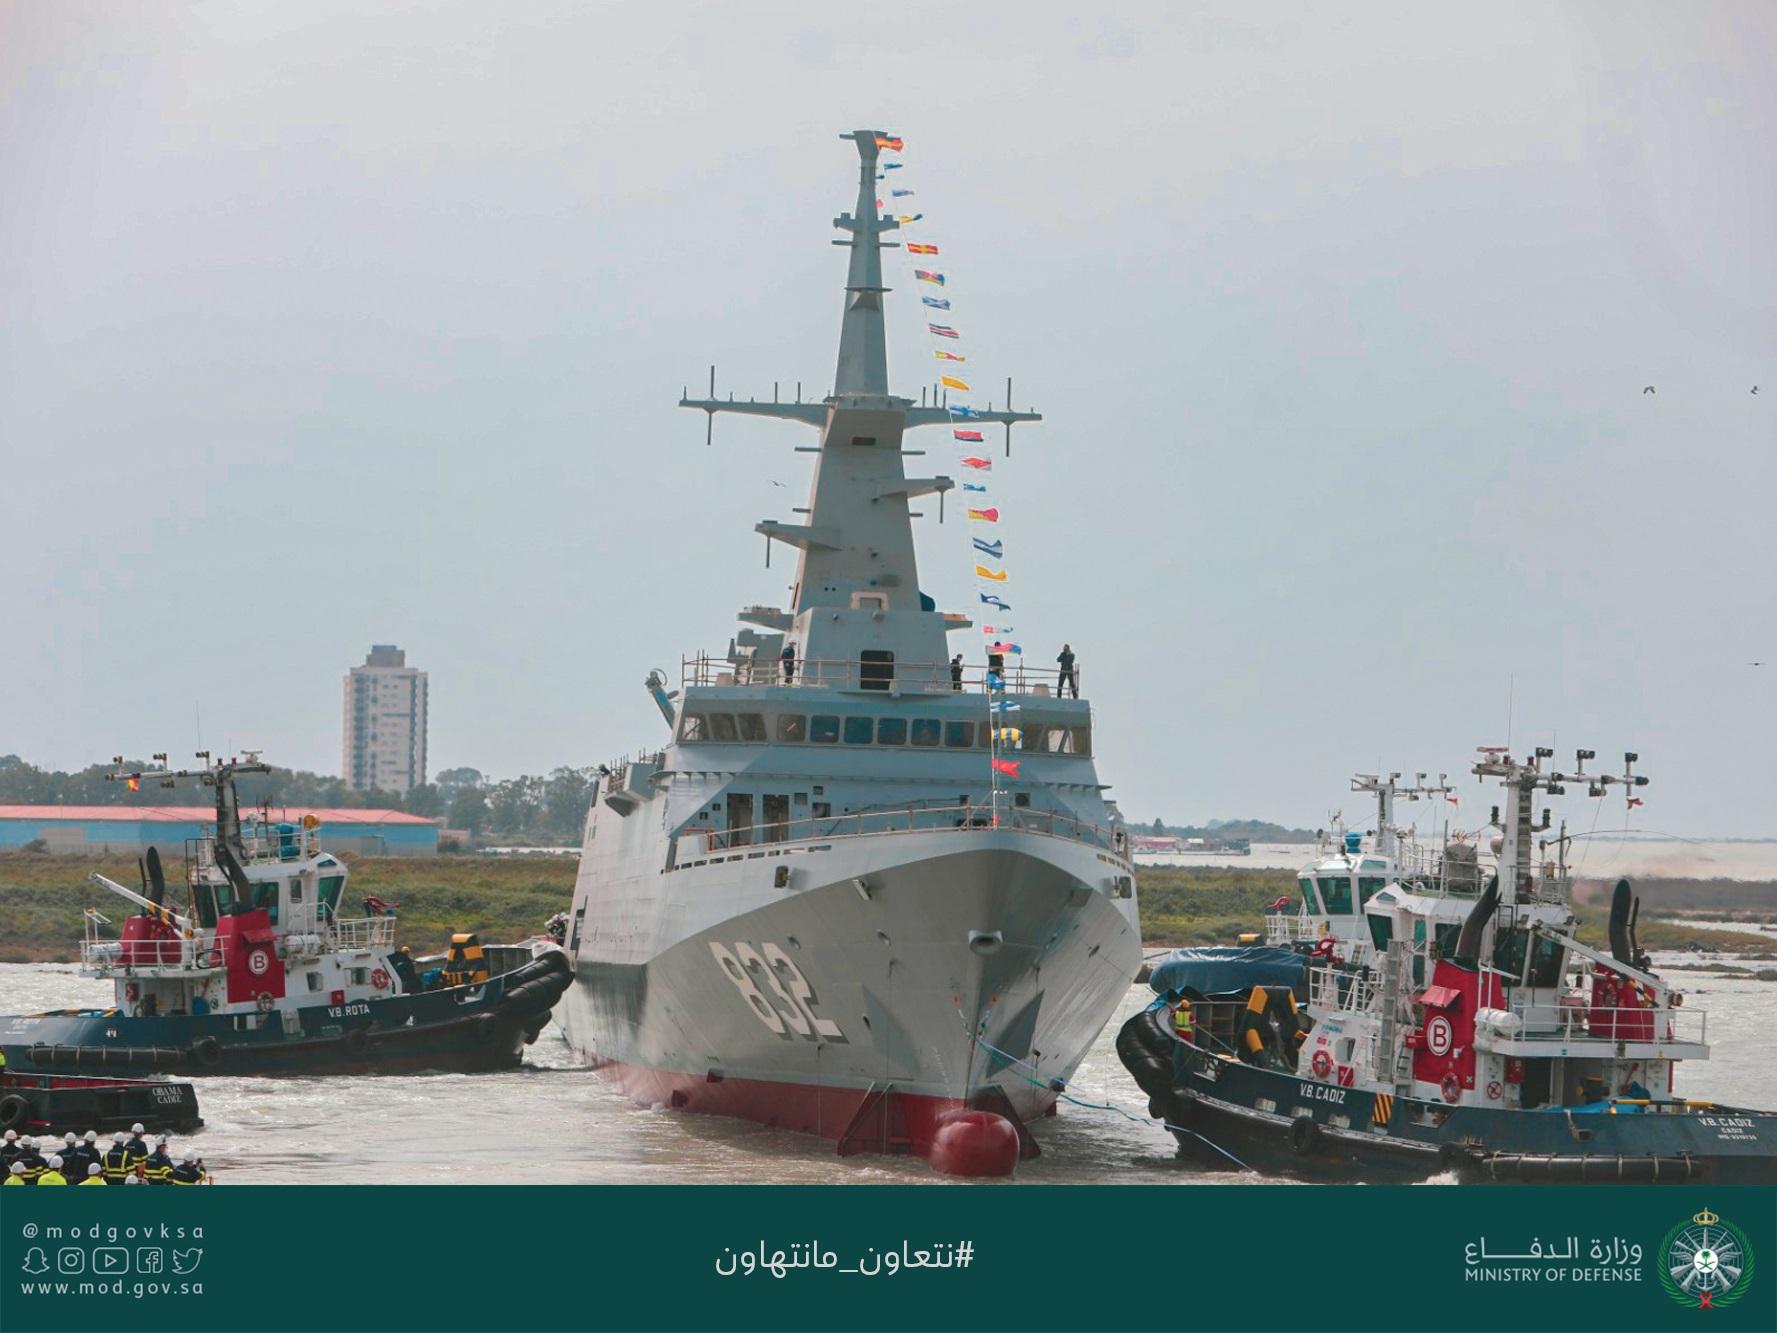 سفينة "جلالة الملك حائل" الحربية السعودية